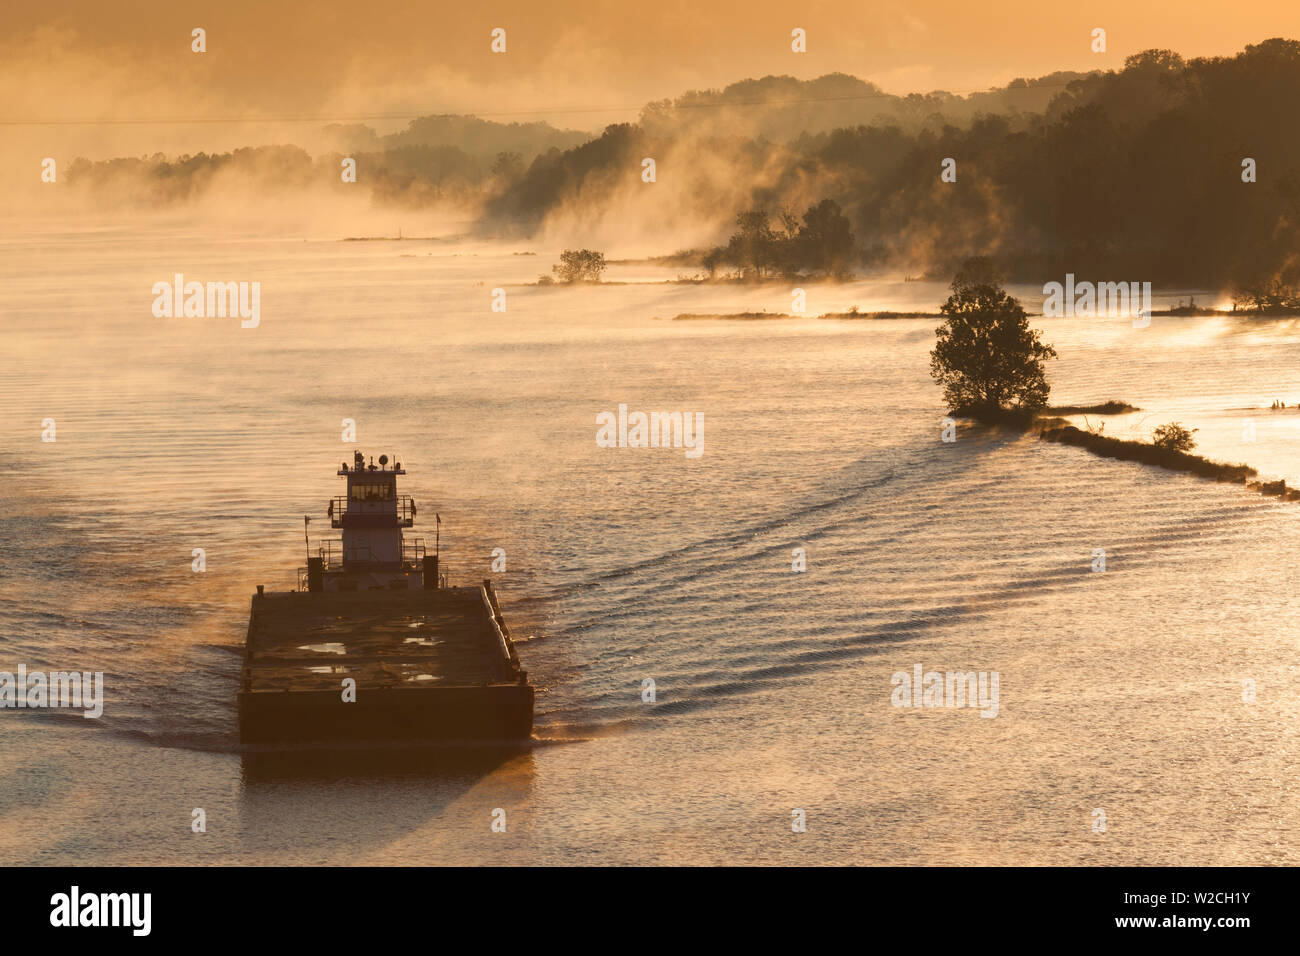 USA, Arkansas, Little Rock, Arkansas River, river barge, le brouillard d'automne Banque D'Images